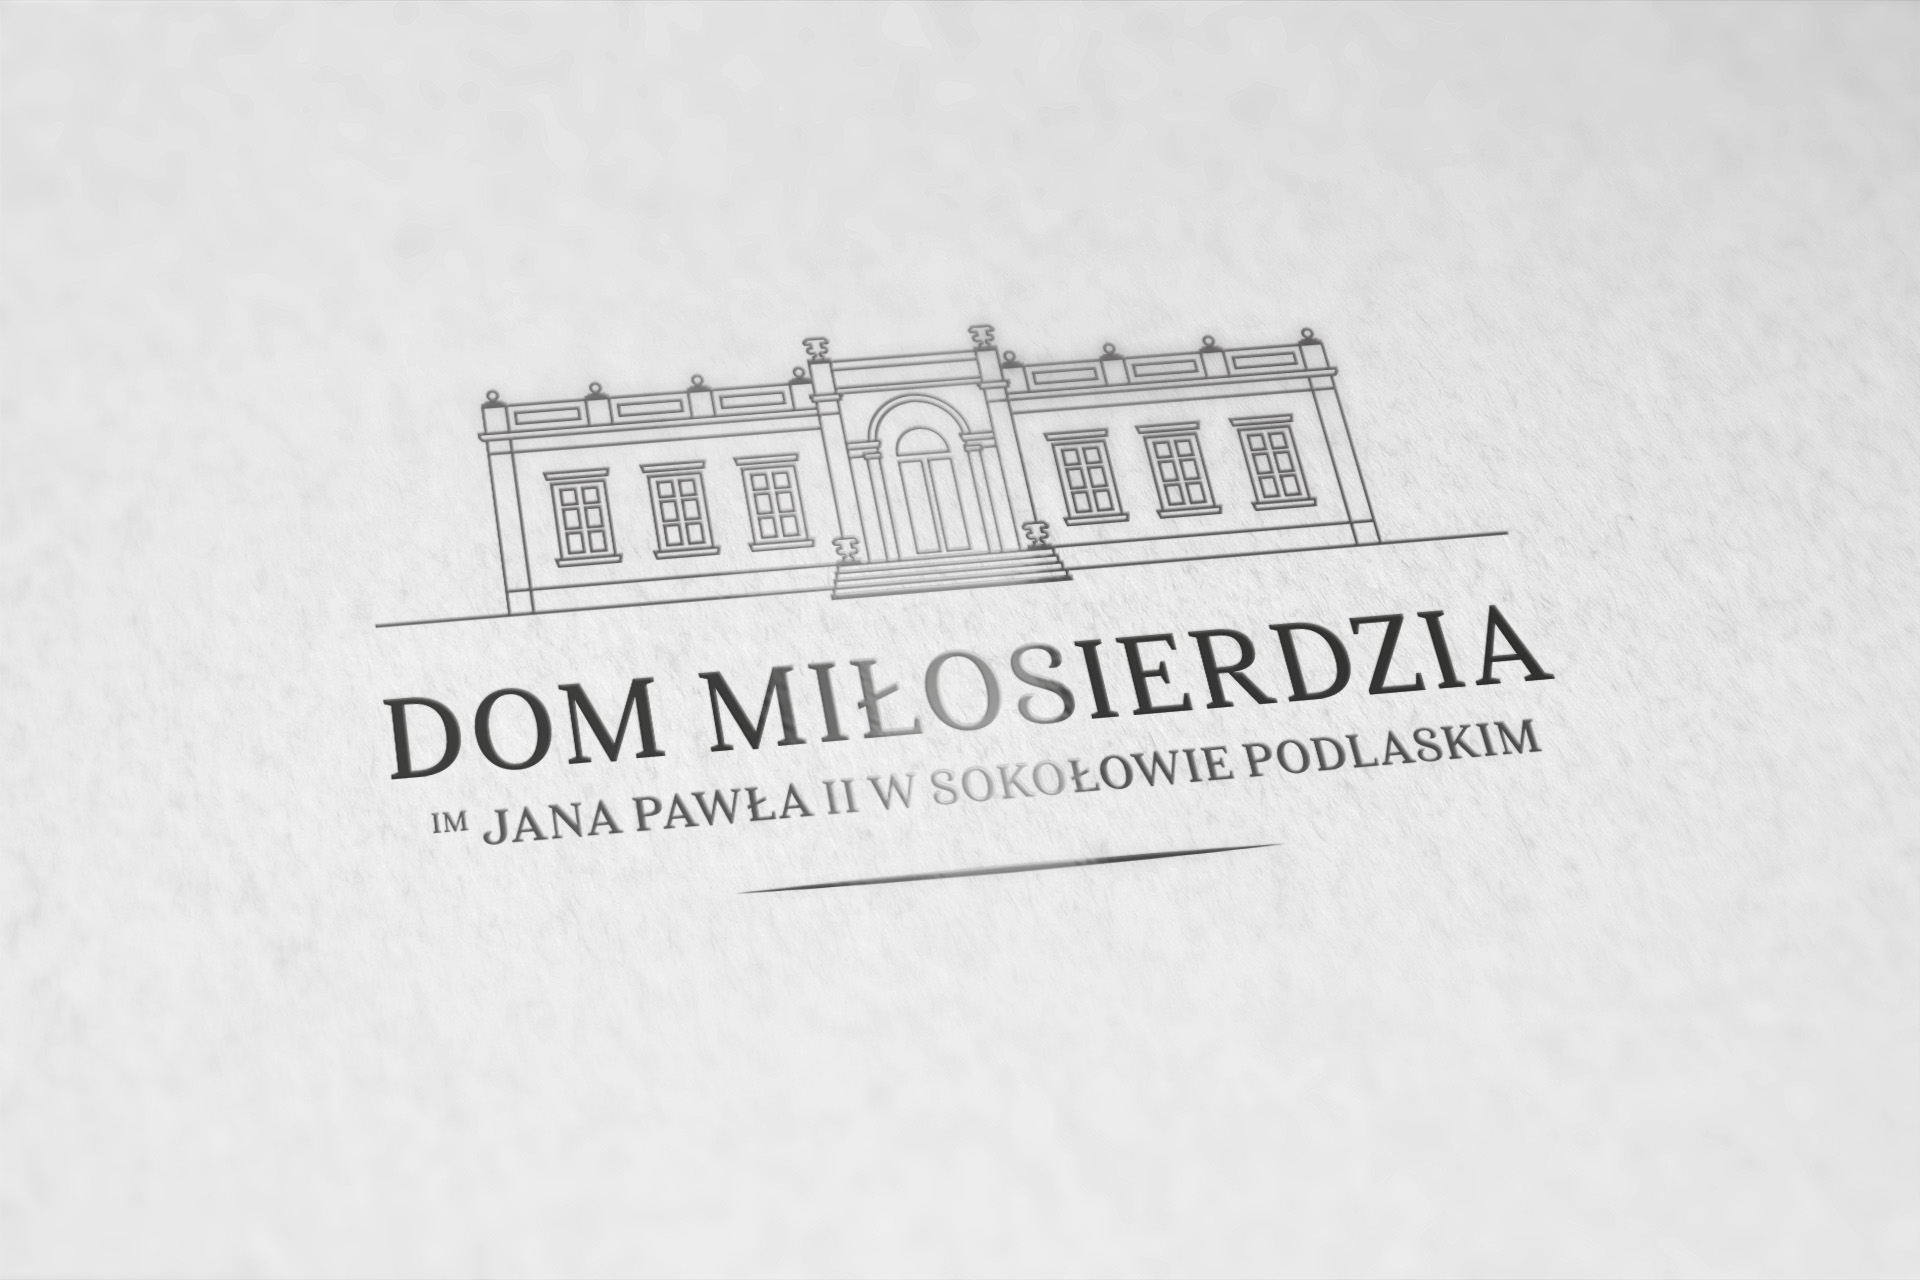 Dom Miłosierdzia im Jana Pawała II w Sokołowie Podlaskim, Logo